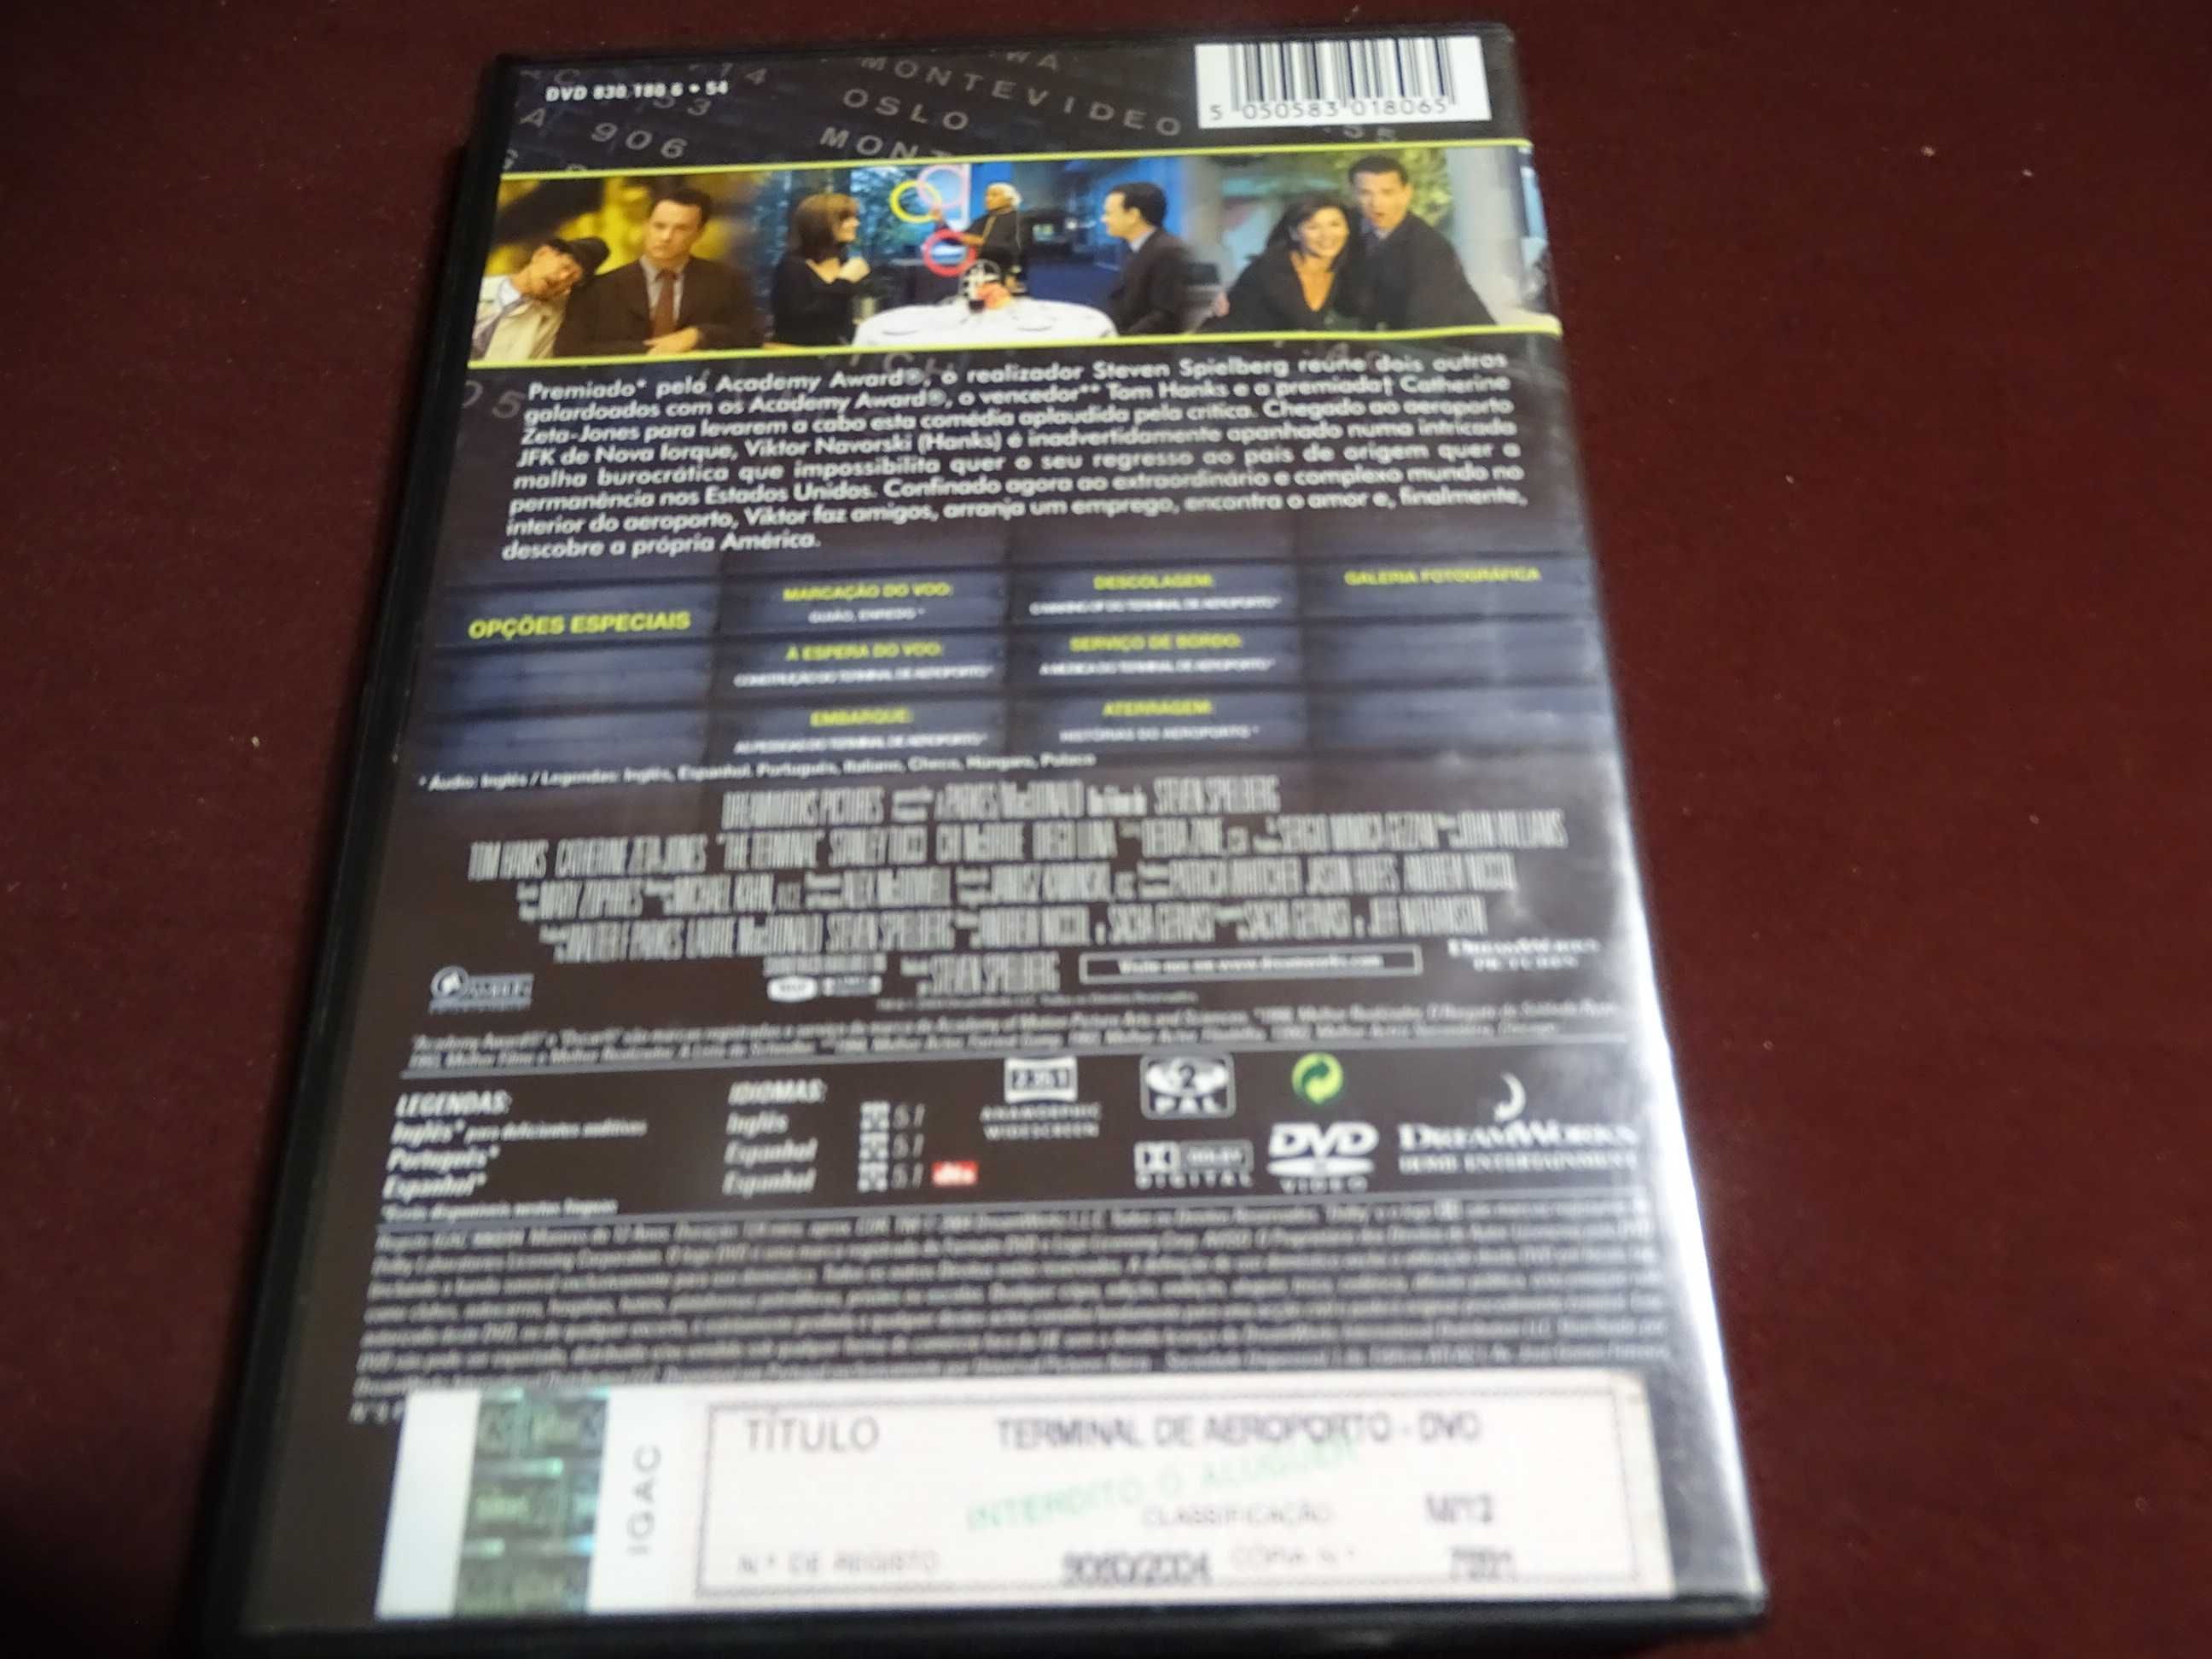 DVD-Terminal de aeroporto-Steven Spielberg-Edição 2 discos